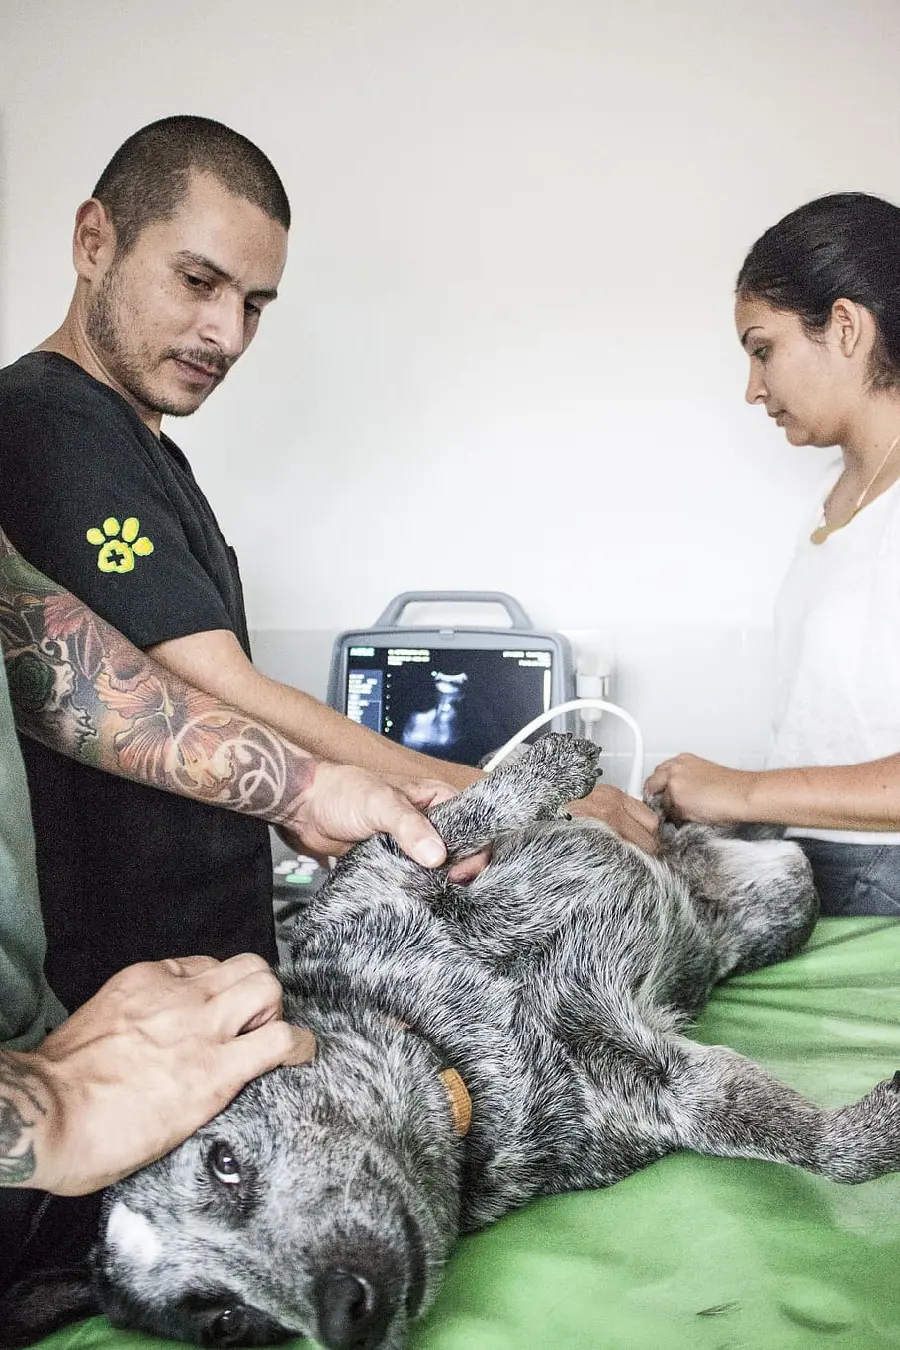 عکس دامپزشک های زحمت کش در حال معاینه سگ زخمی 